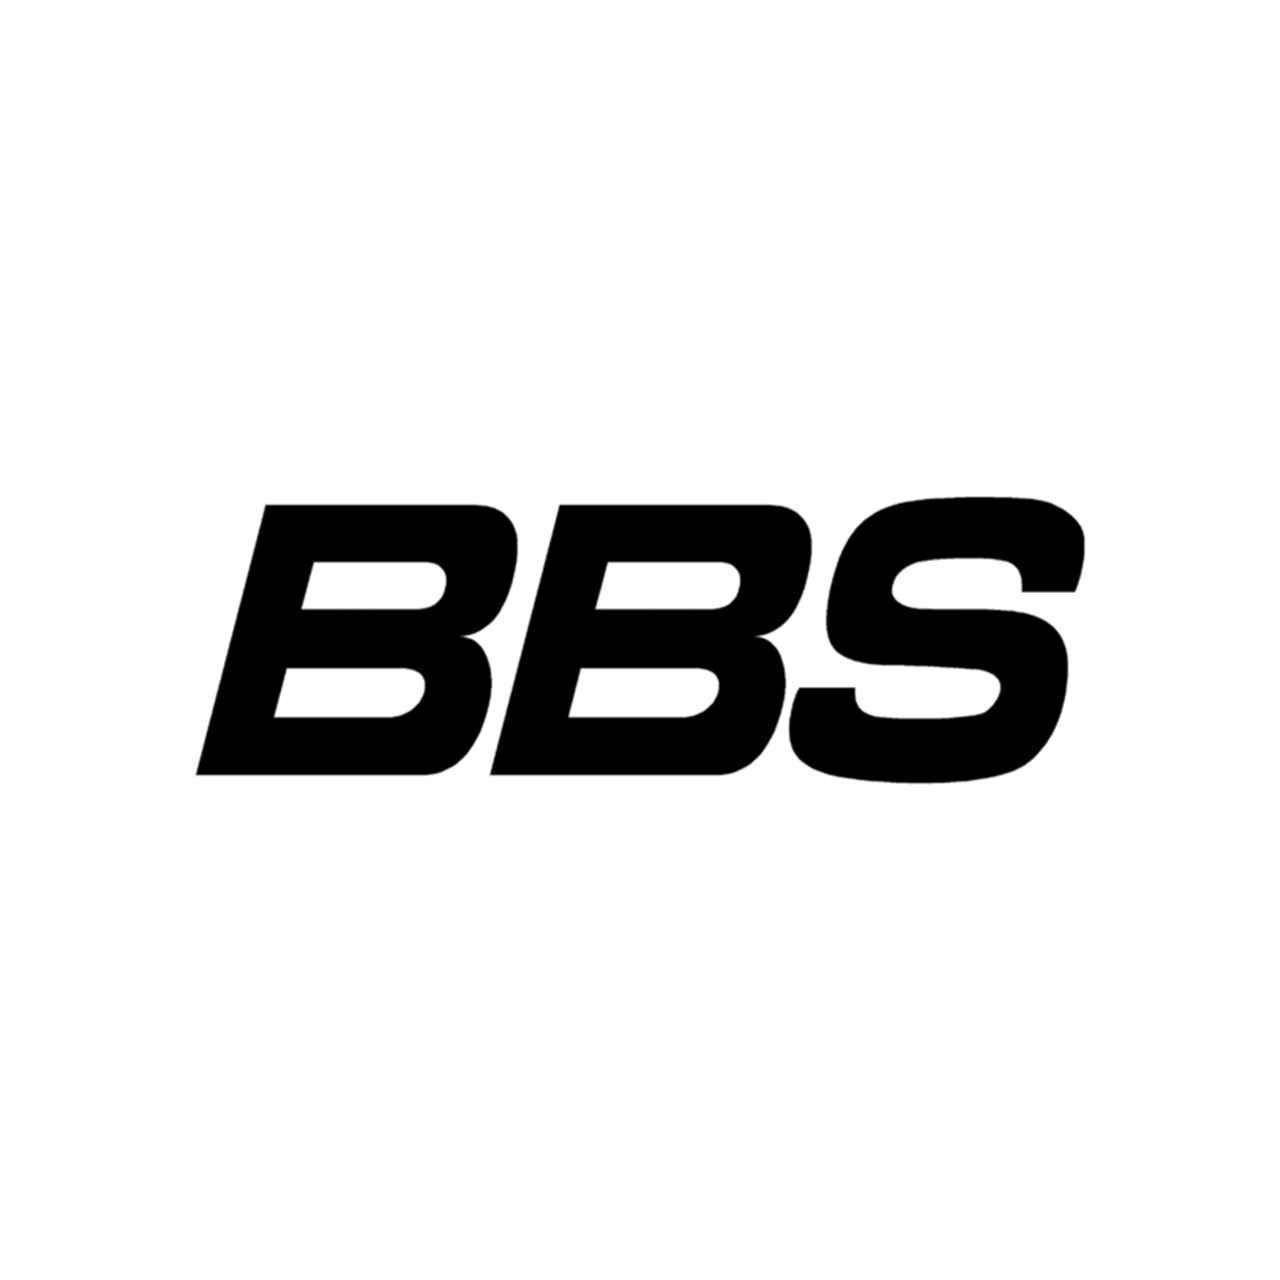 BBS Logo - Stickers Bbs Logo Vinyl Decal Sticker. Aftermarket Decals. Vinyl